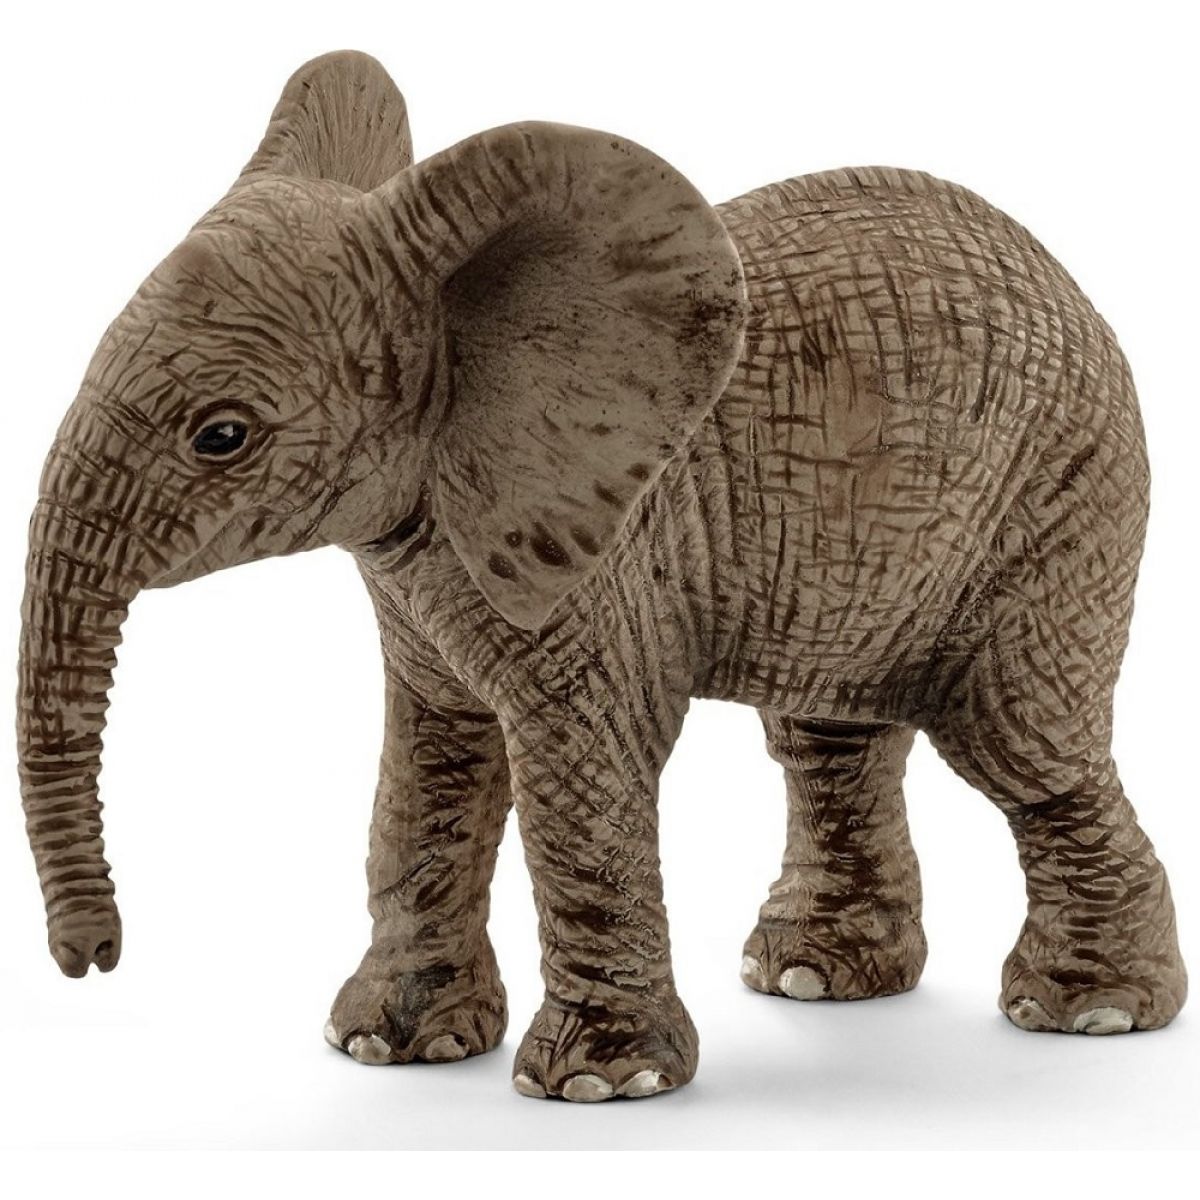 Schleich 14763 Slon africký mládě